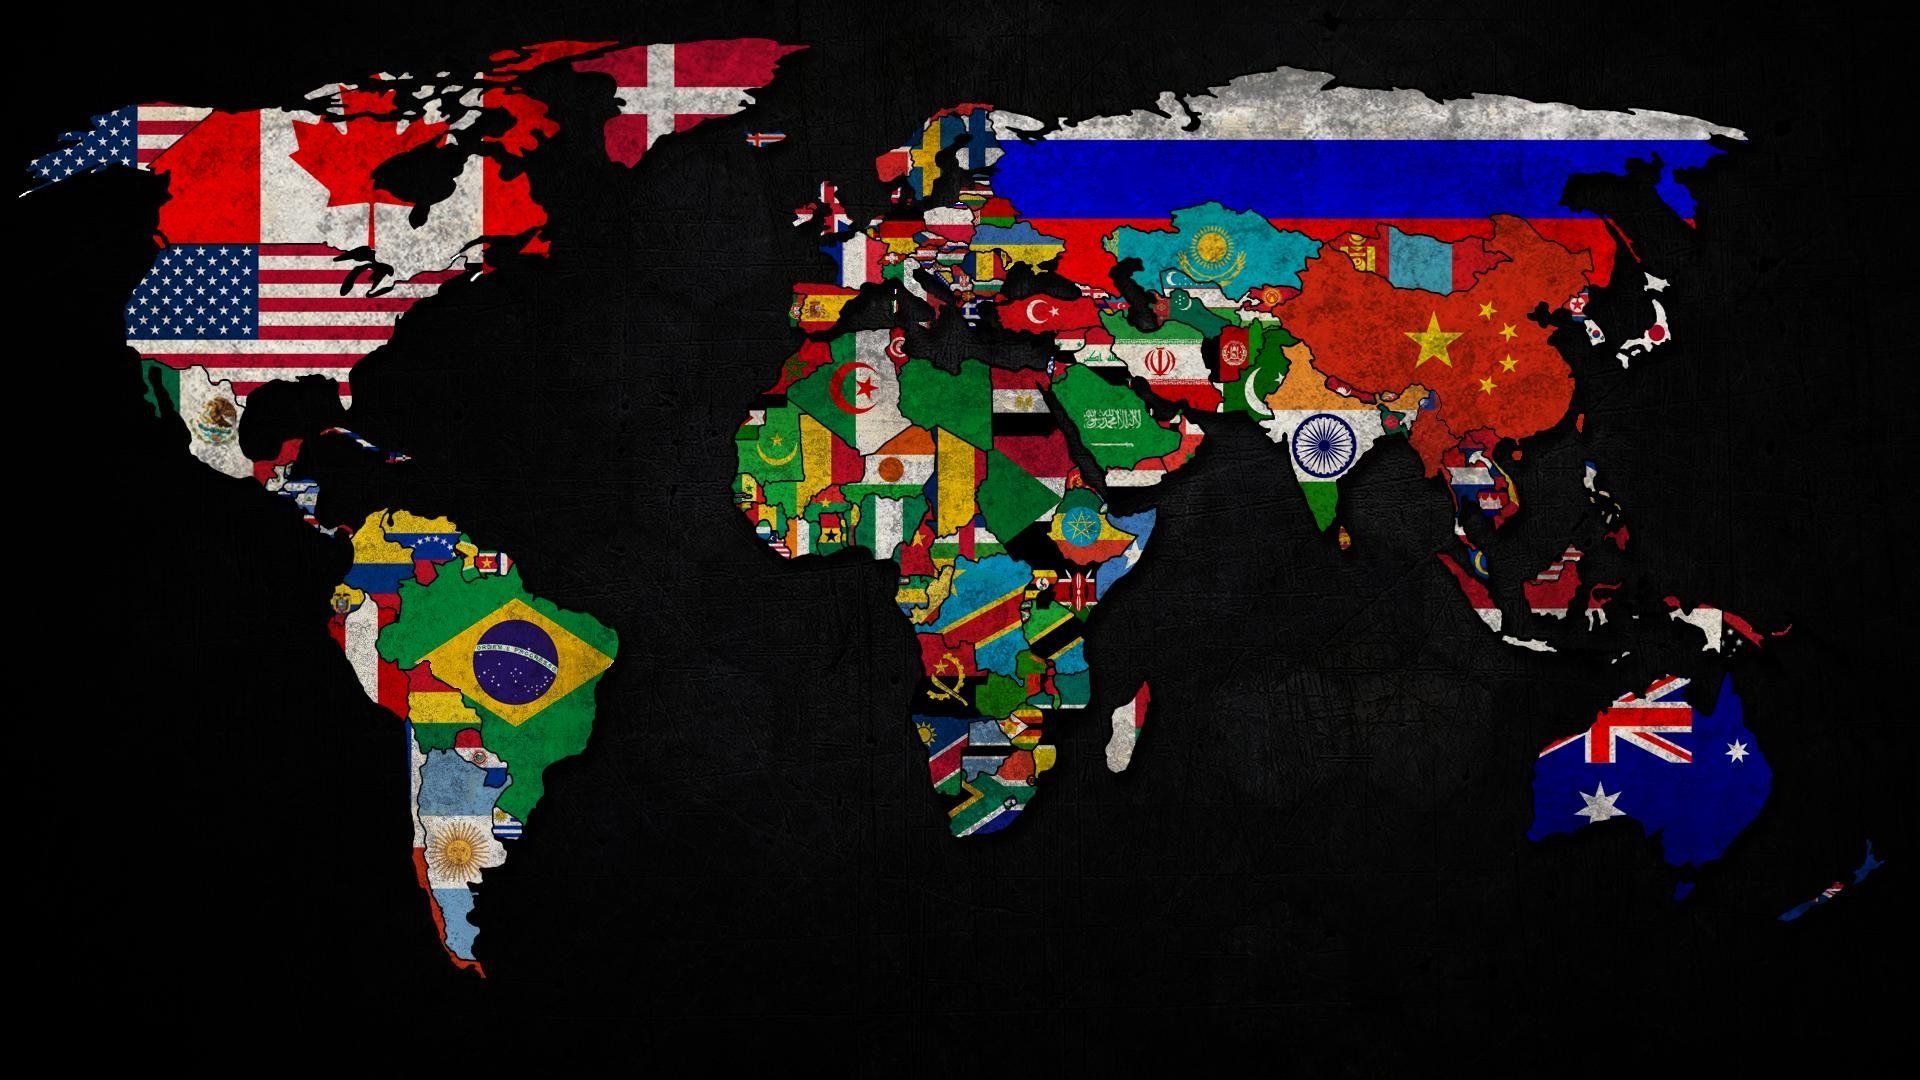 wallpaper world map